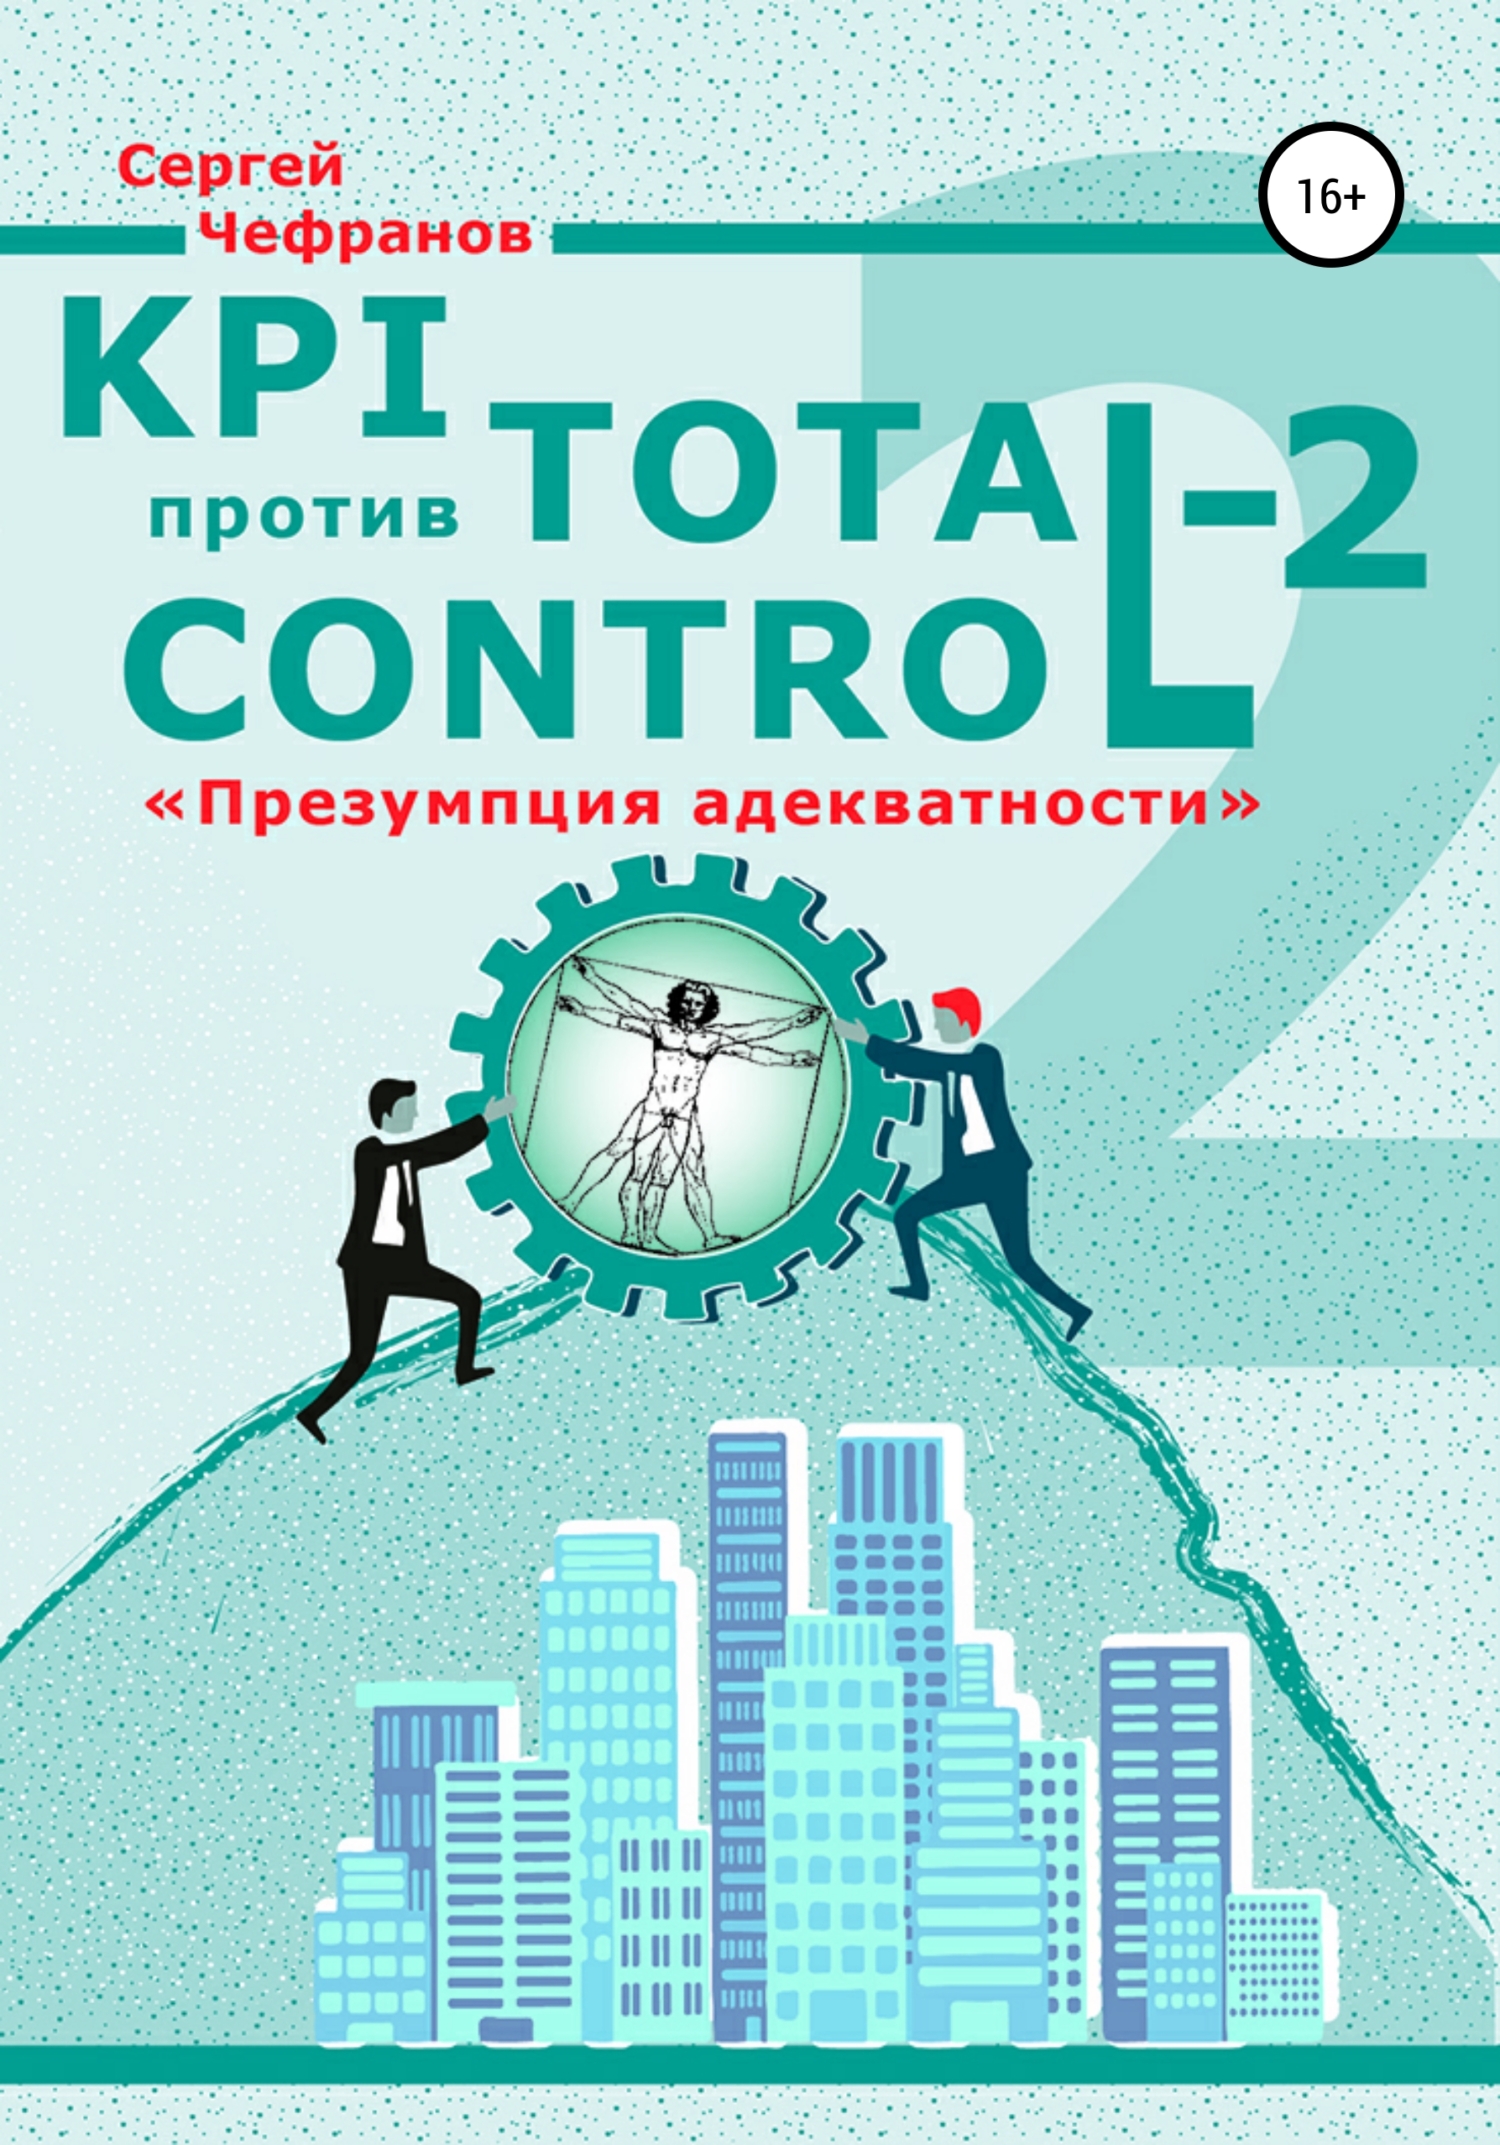 Книга  KPI против Total Control-2 созданная Сергей Дмитриевич Чефранов может относится к жанру организационный менеджмент, производственный менеджмент, просто о бизнесе. Стоимость электронной книги KPI против Total Control-2 с идентификатором 67168413 составляет 199.00 руб.